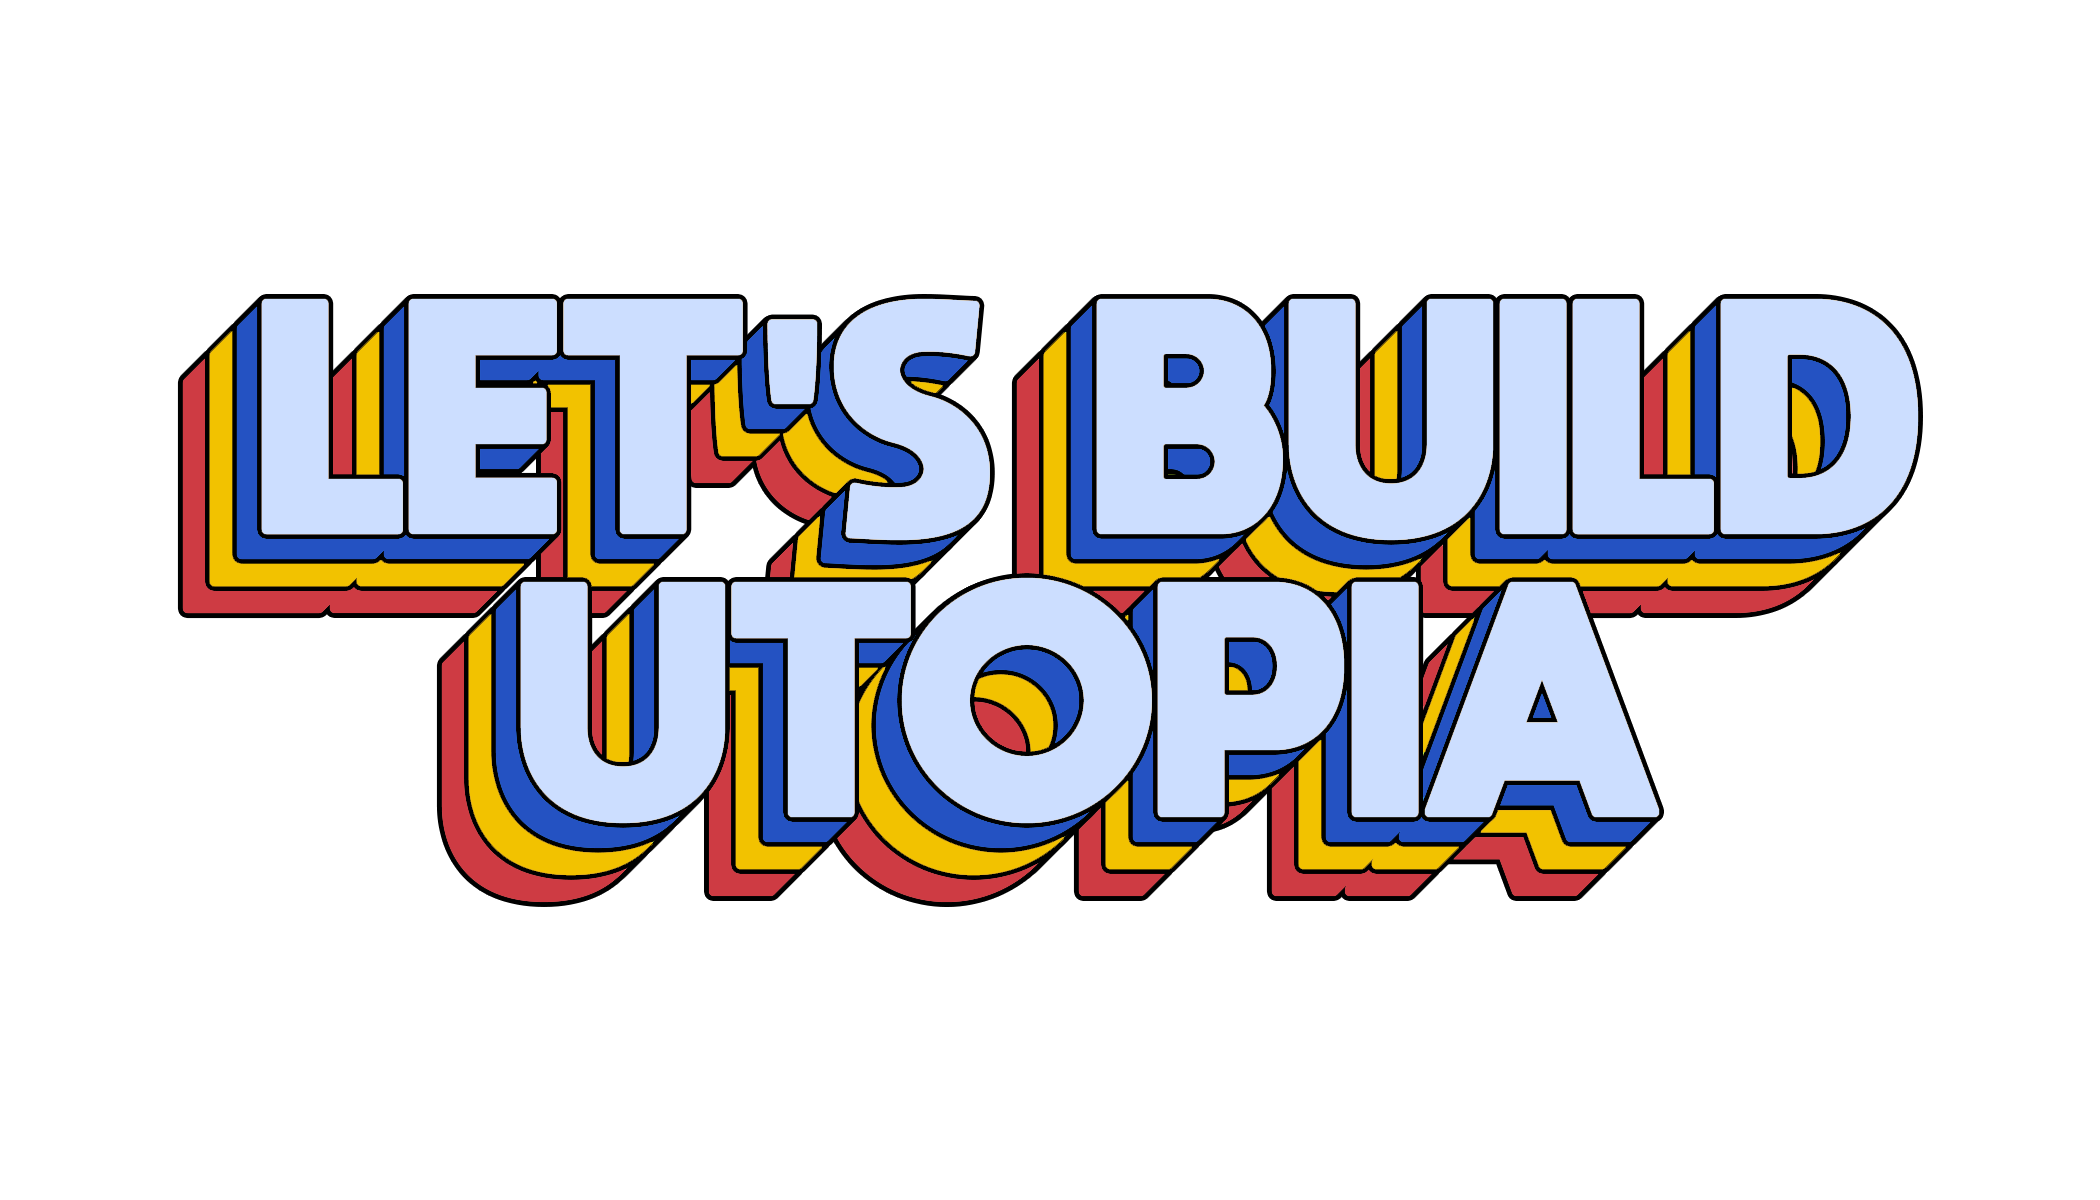 Let's build Utopia